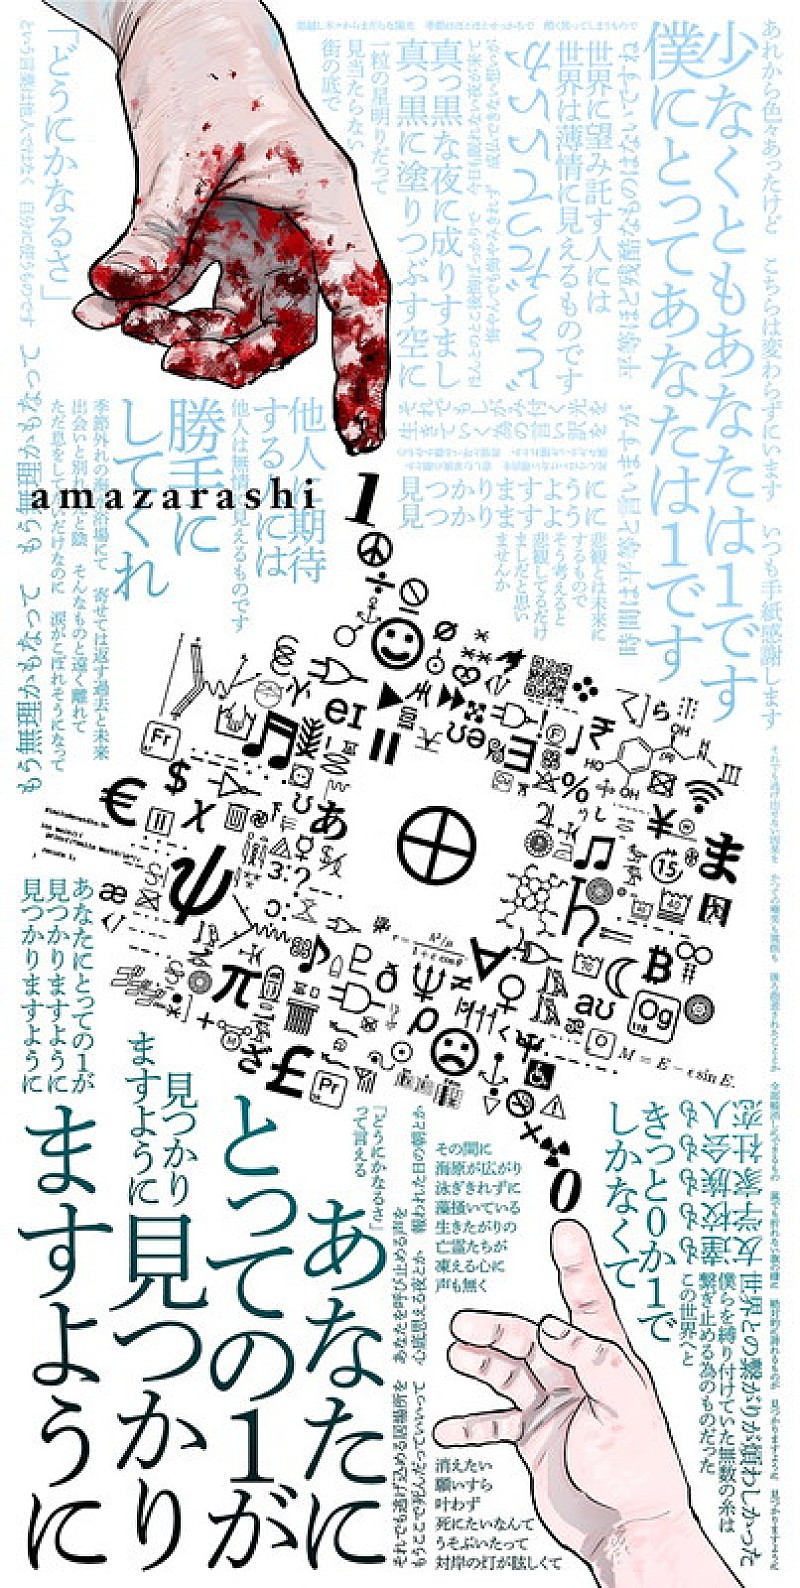 amazarashi×漫画『チ。』往復書簡プロジェクトがスタート、第一弾は魚豊がイラスト書き下ろし